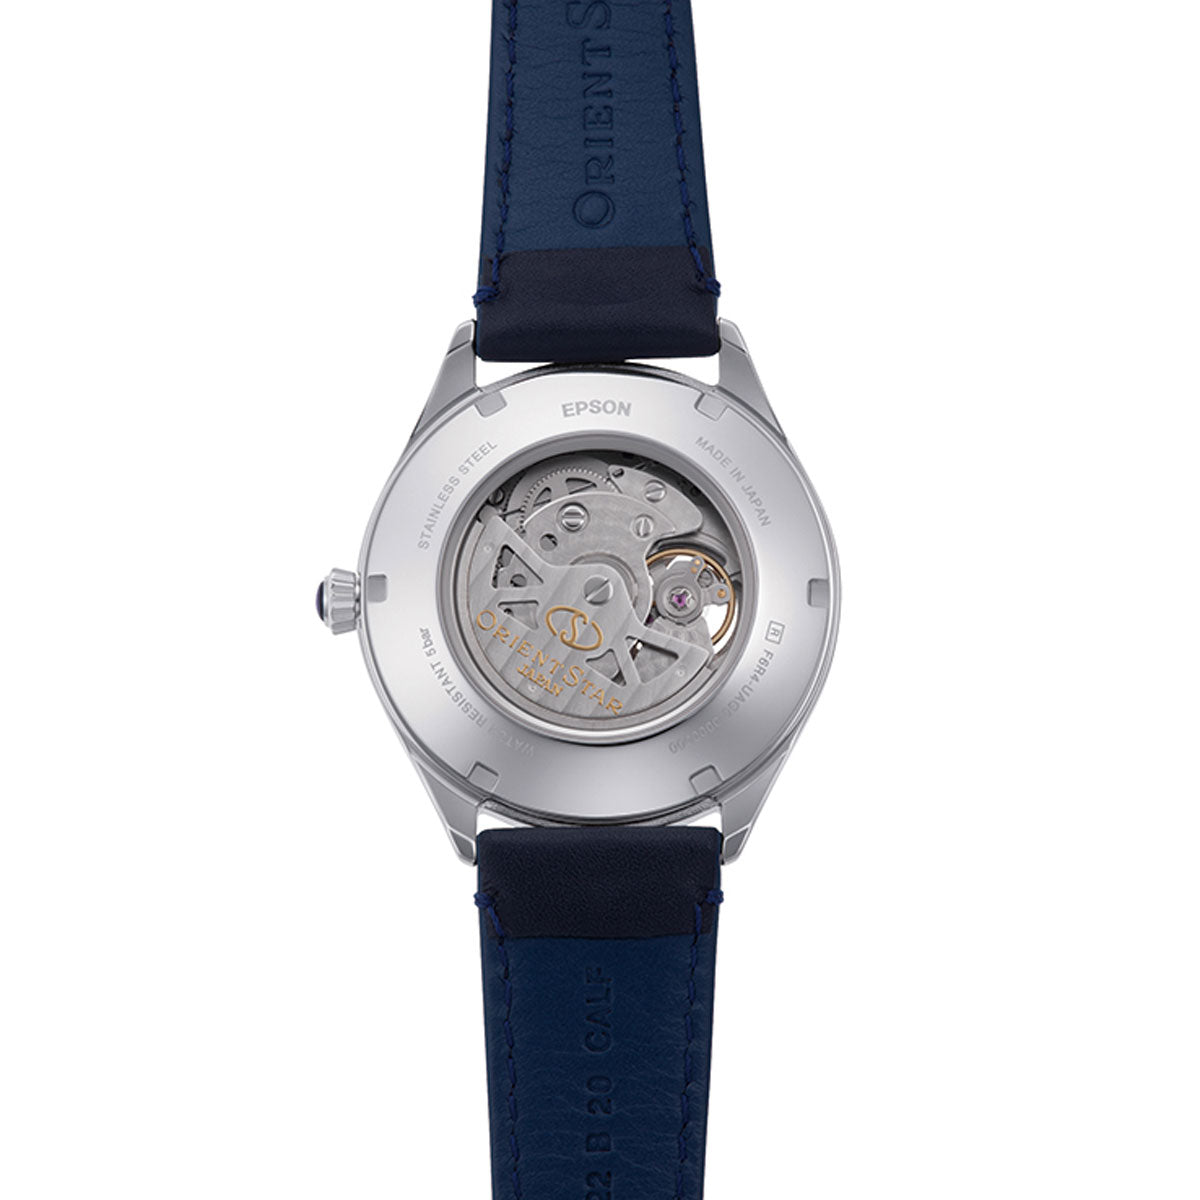 オリエントスター ORIENT STAR 腕時計 メンズ 自動巻き 機械式 クラシック CLASSIC クラシックセミスケルトン RK-AT0203L